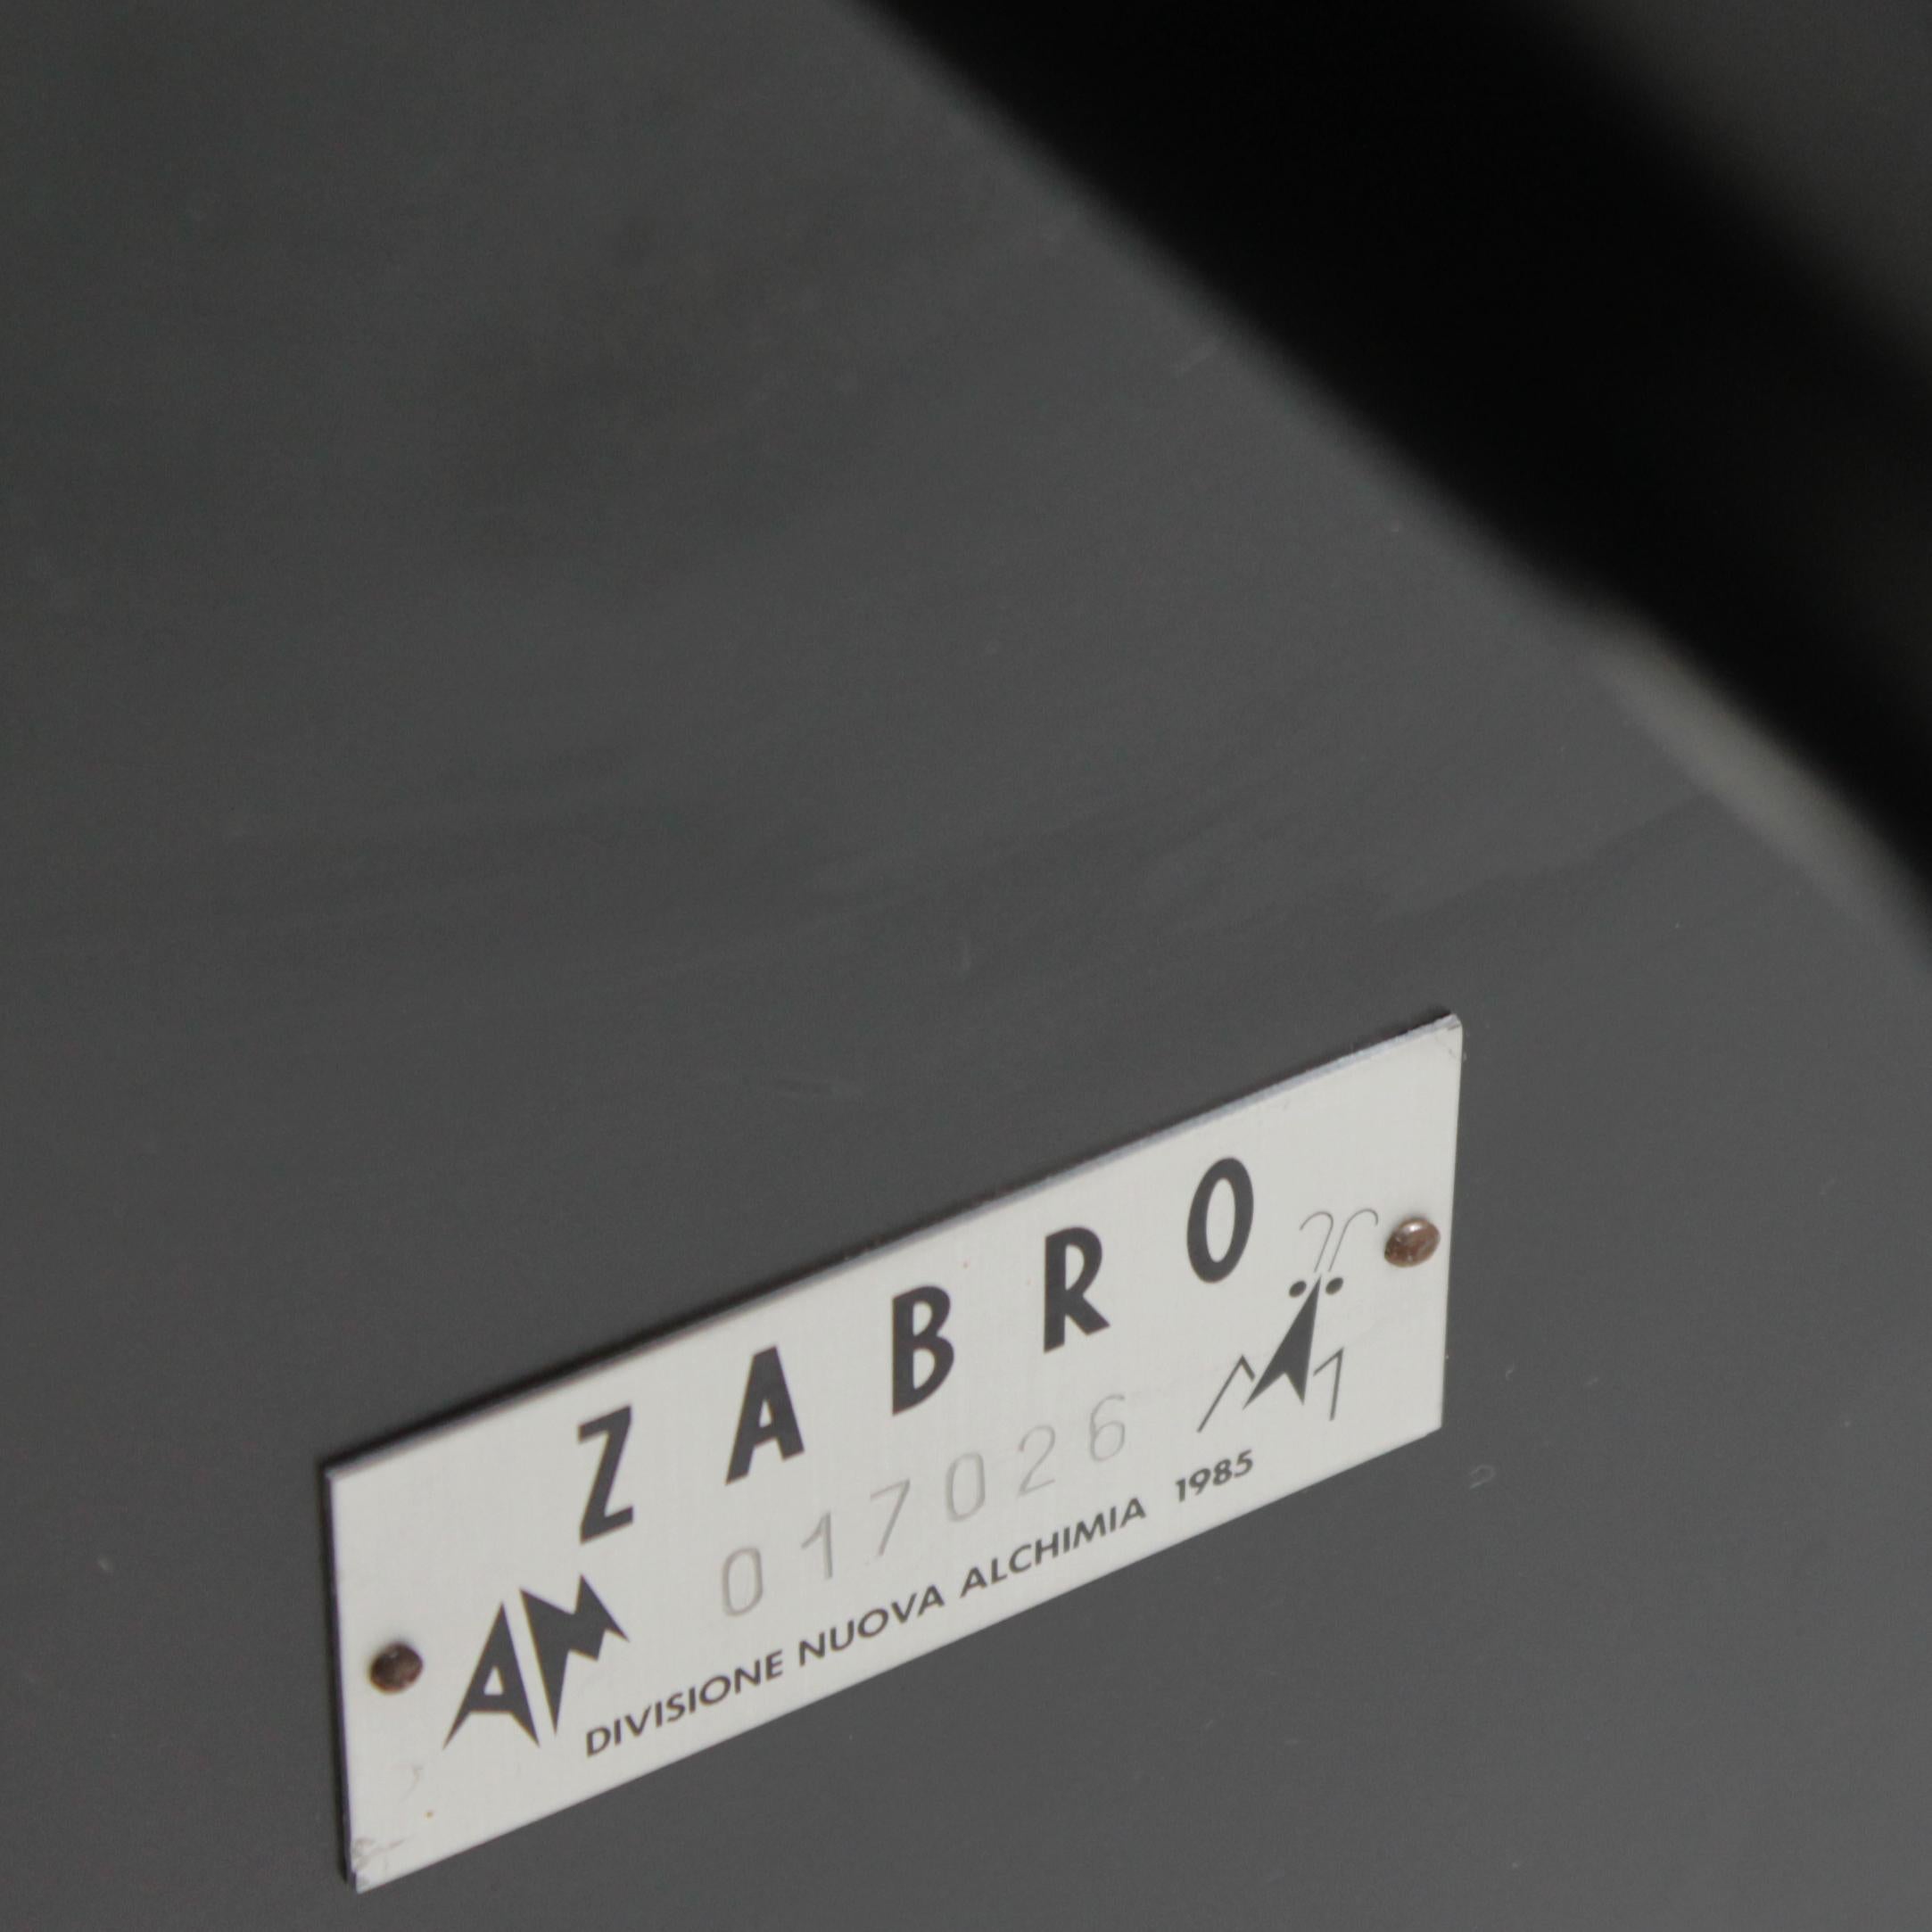 Table 'Acilio' by Alessandro Mendini for Zabro, Nuova Alchimia 14